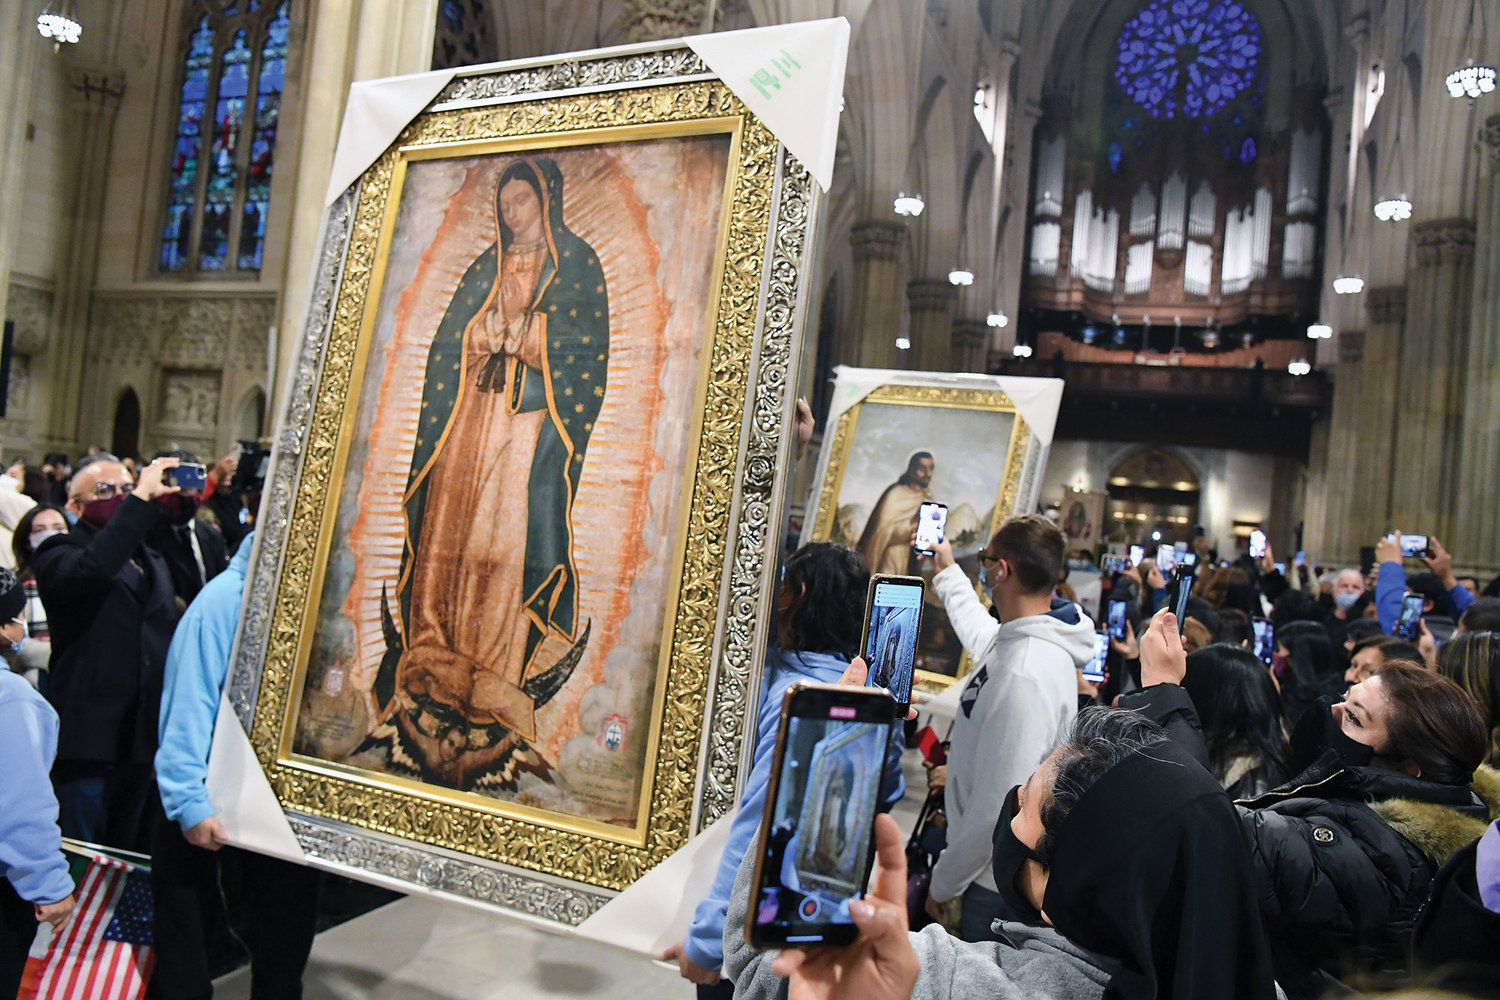 HONRANDO MARÍA—La procesión de entrada de la misa de Nuestra Señora de Guadalupe el diciembre pasado en la Catedral de San Patricio, arriba, incluyó un retrato grande de María y uno de San Juan Diego. Los retratos fueron regalos a la Arquidiócesis de Nueva York de parte de la Conferencia Episcopal de México.